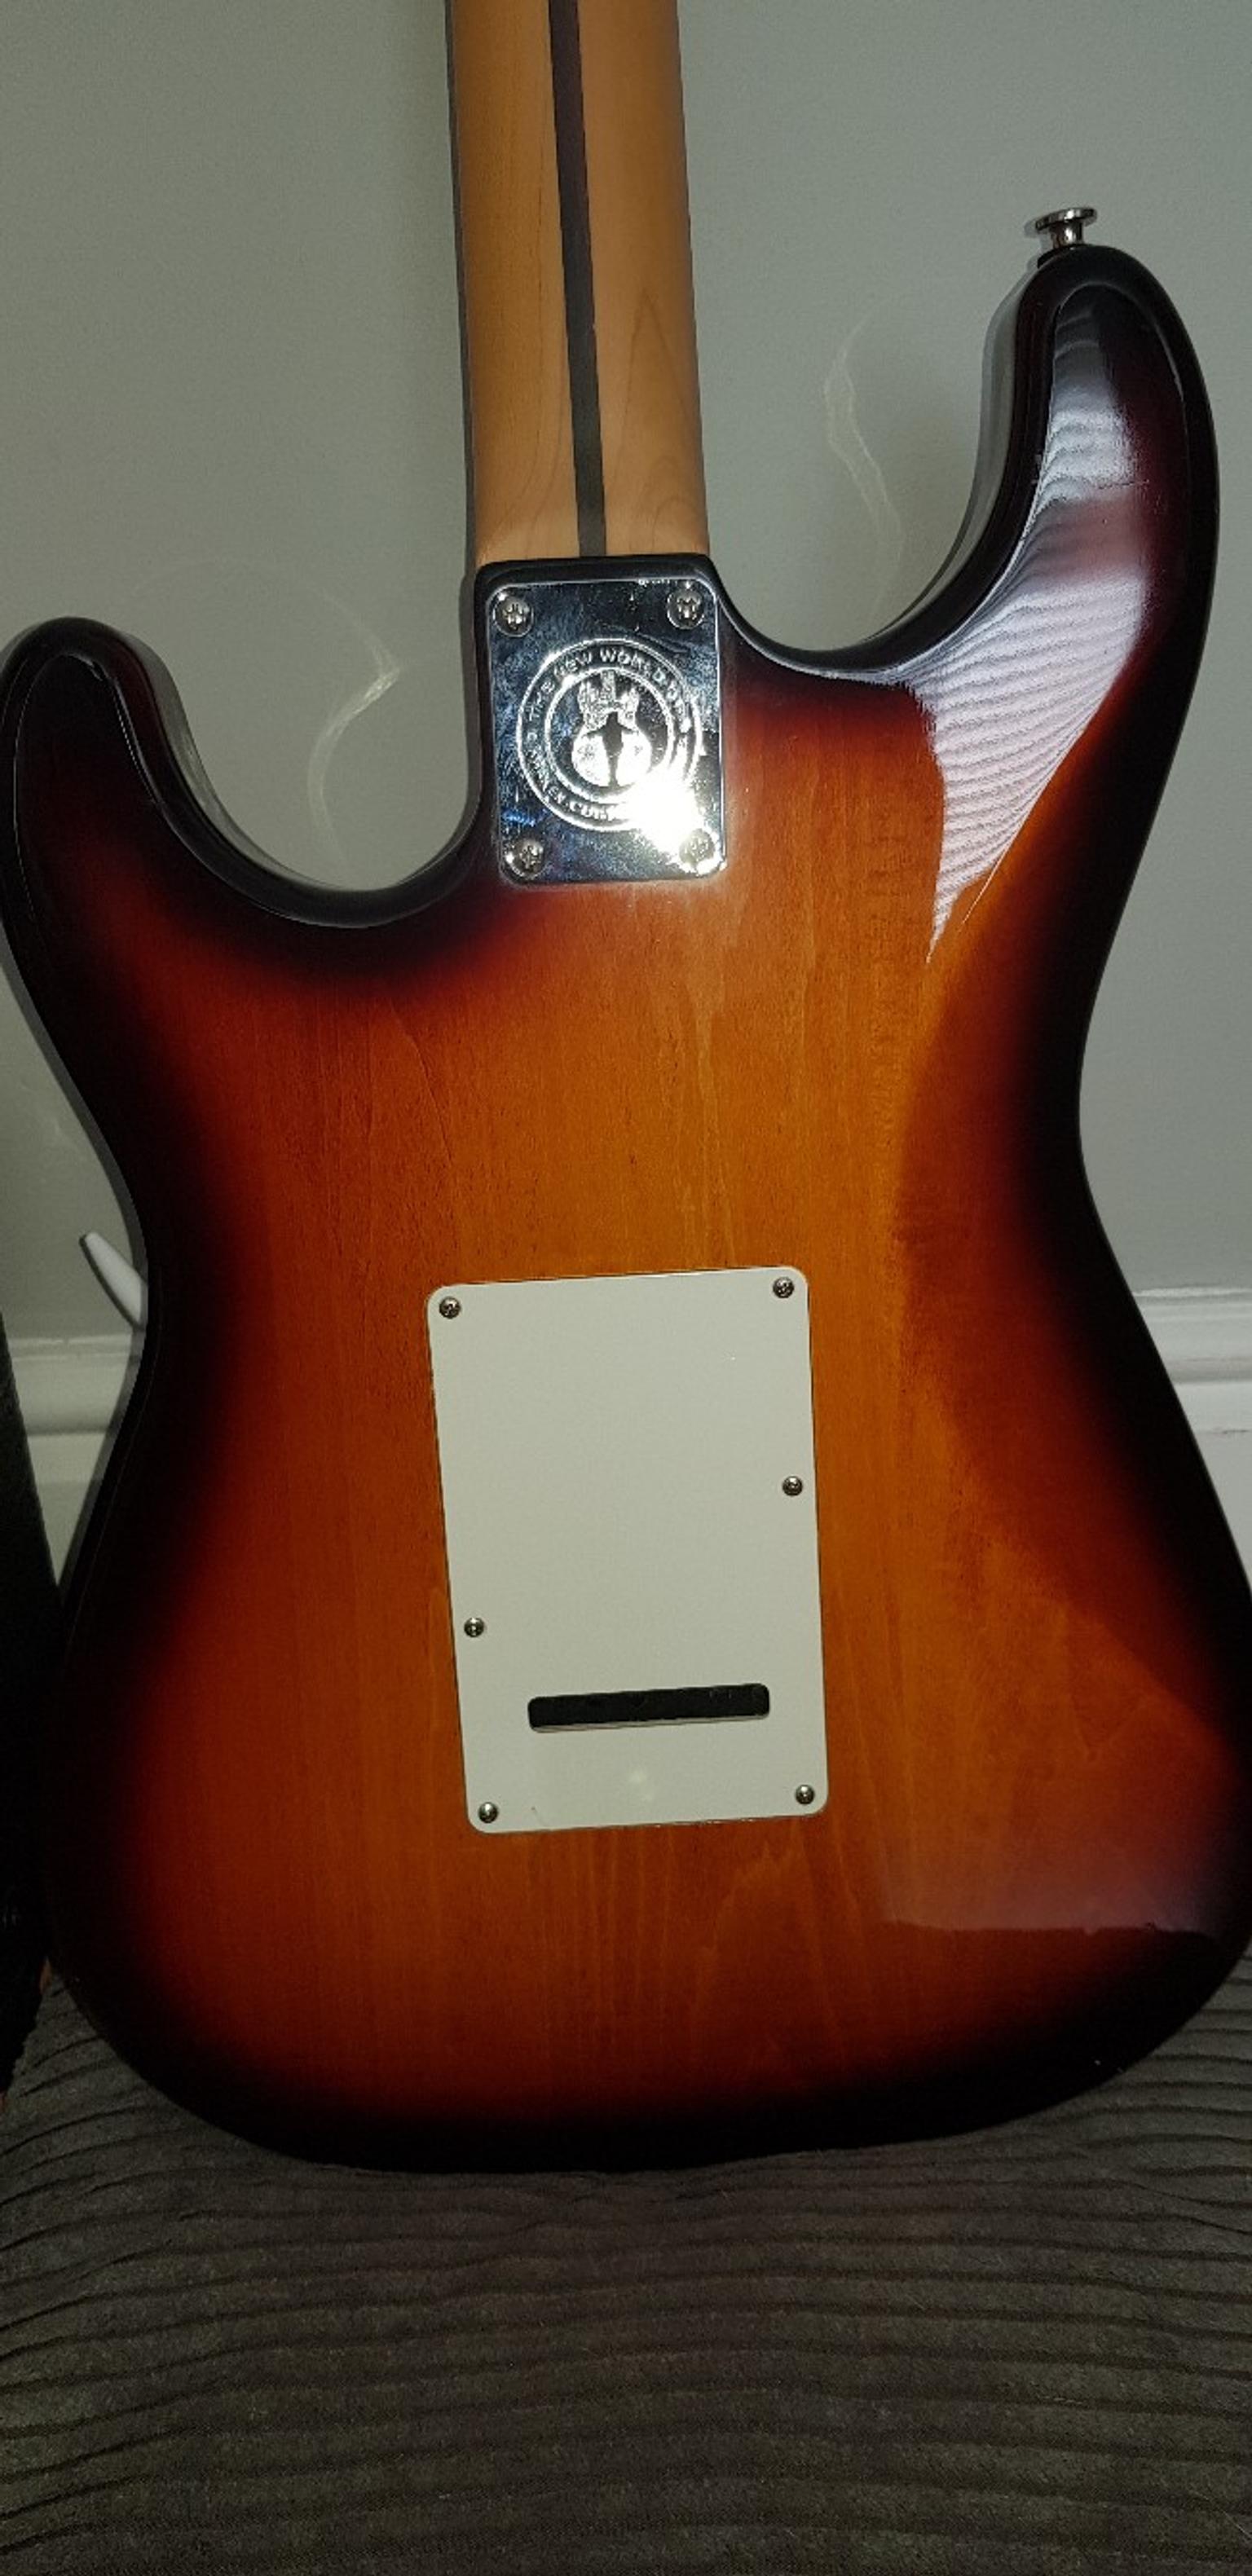 5632】 Kraken custom guitar duncan 日本メーカー保証付き ketoanvlc.com